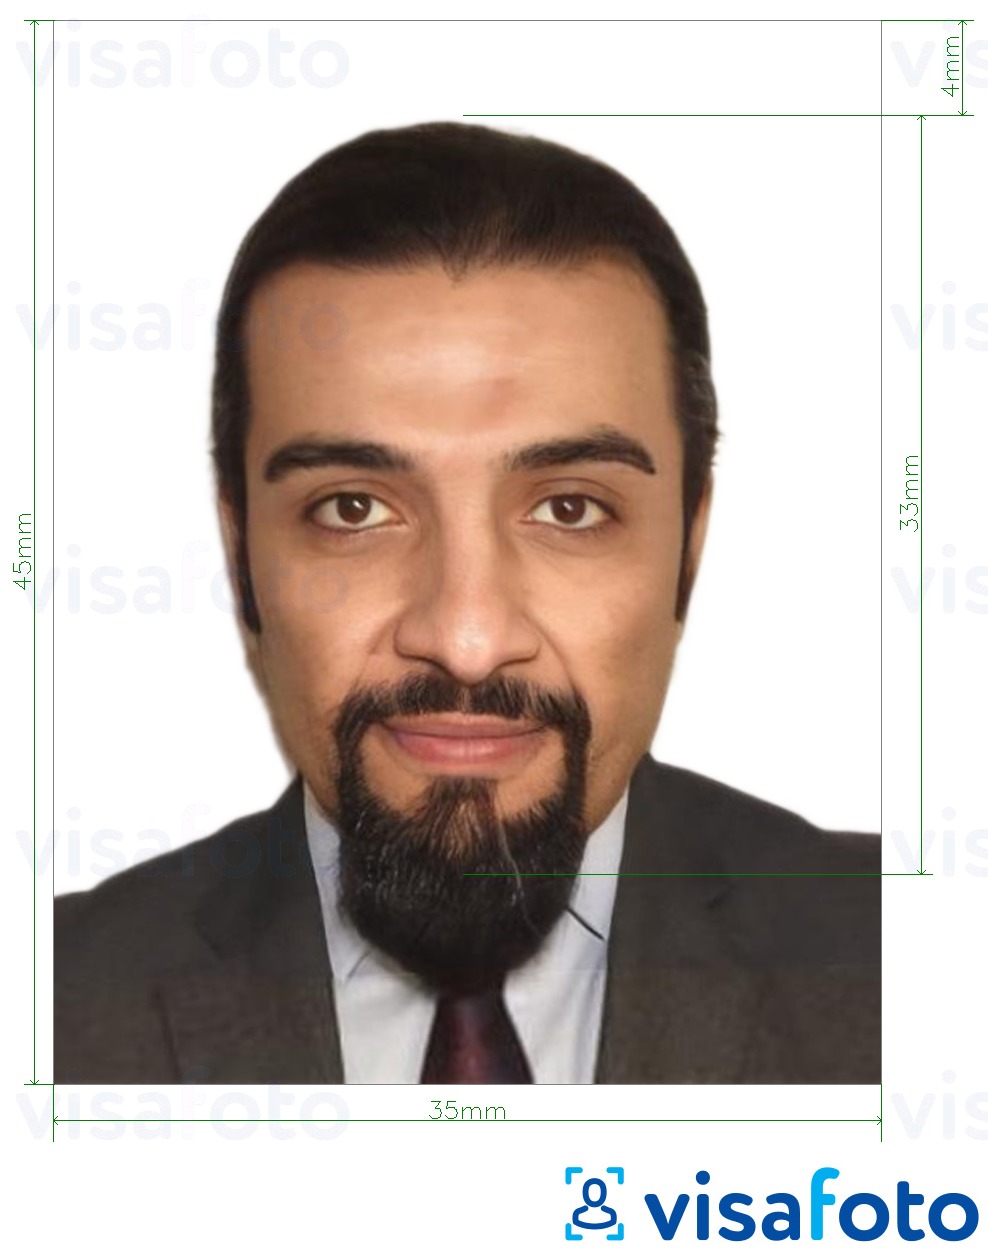 Fotobeispiel für Jordanien Arbeitserlaubnis 3,5x4,5 cm (35x45 mm) mit genauer größenangabe